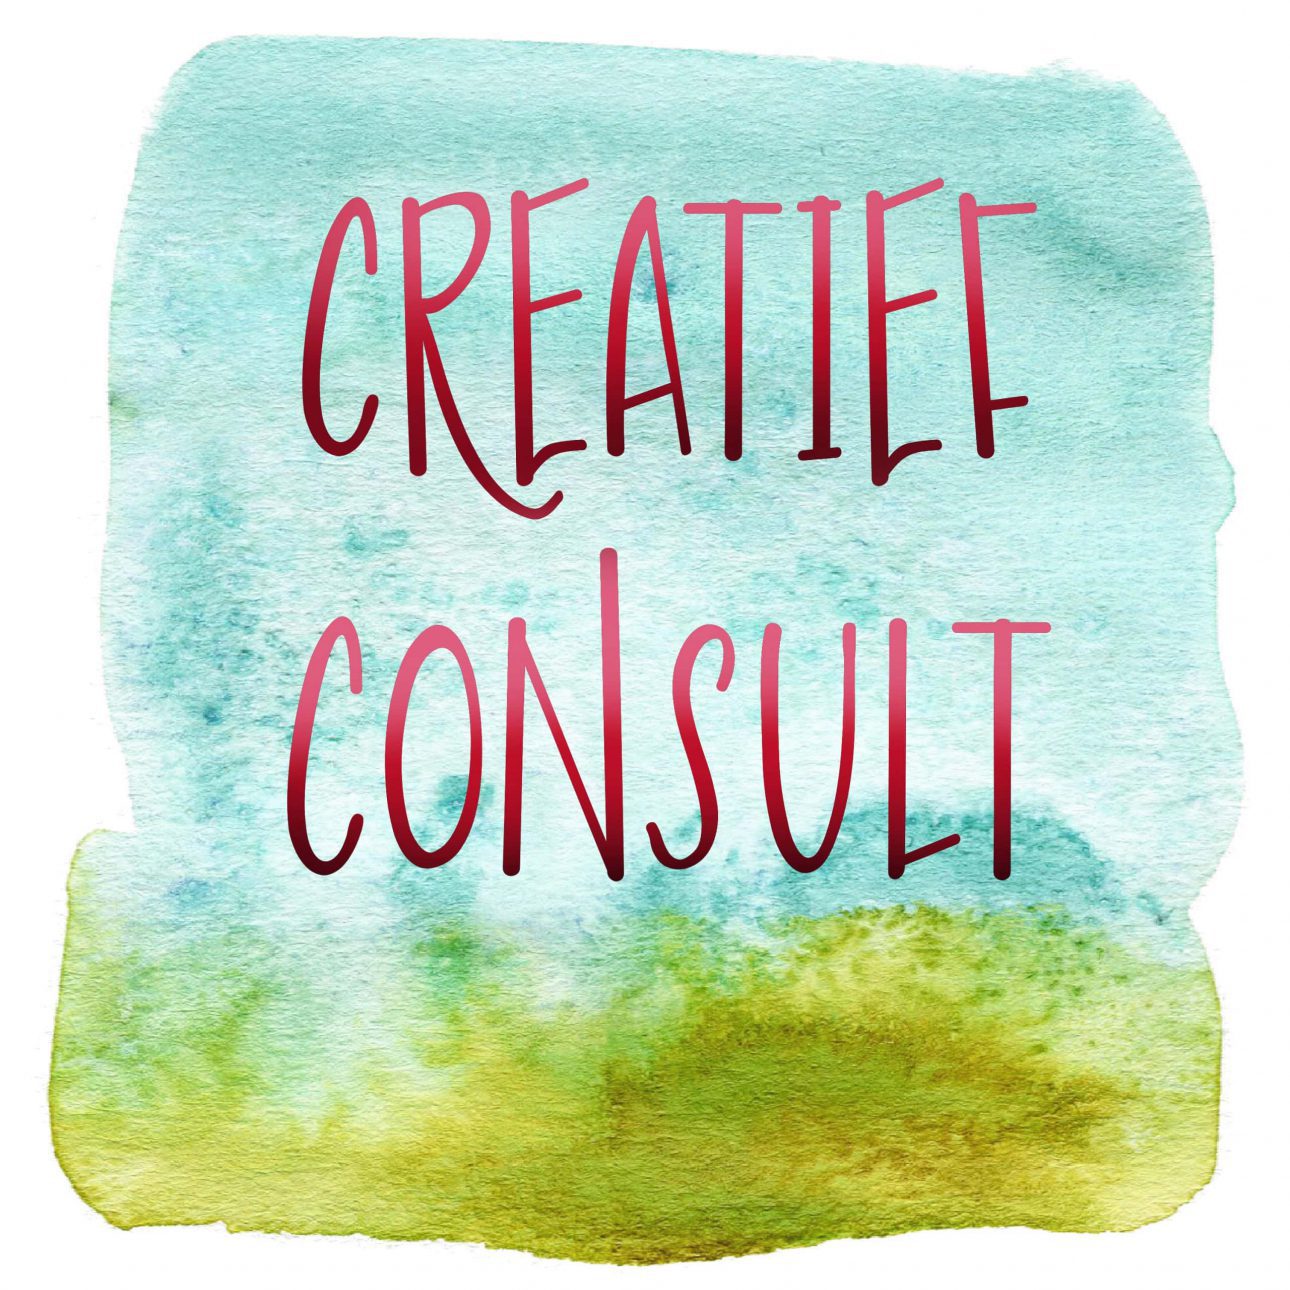 creatief consult